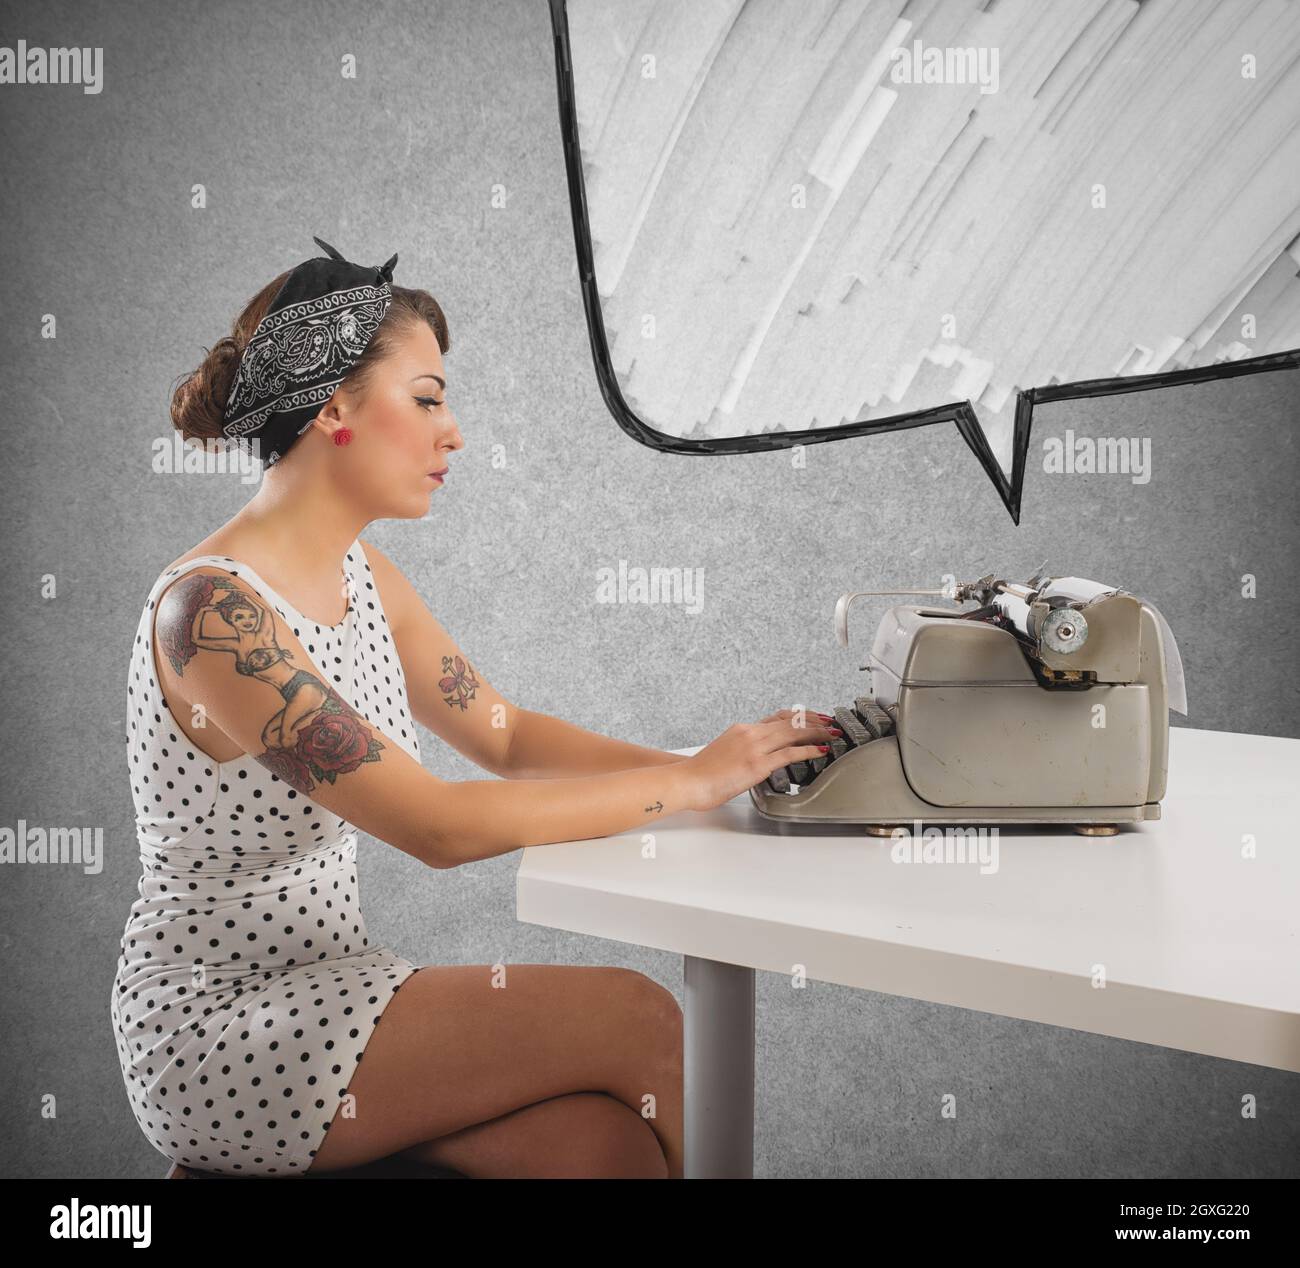 Hübsches Pin-up-Mädchen schreibt mit einer Schreibmaschine Stockfoto